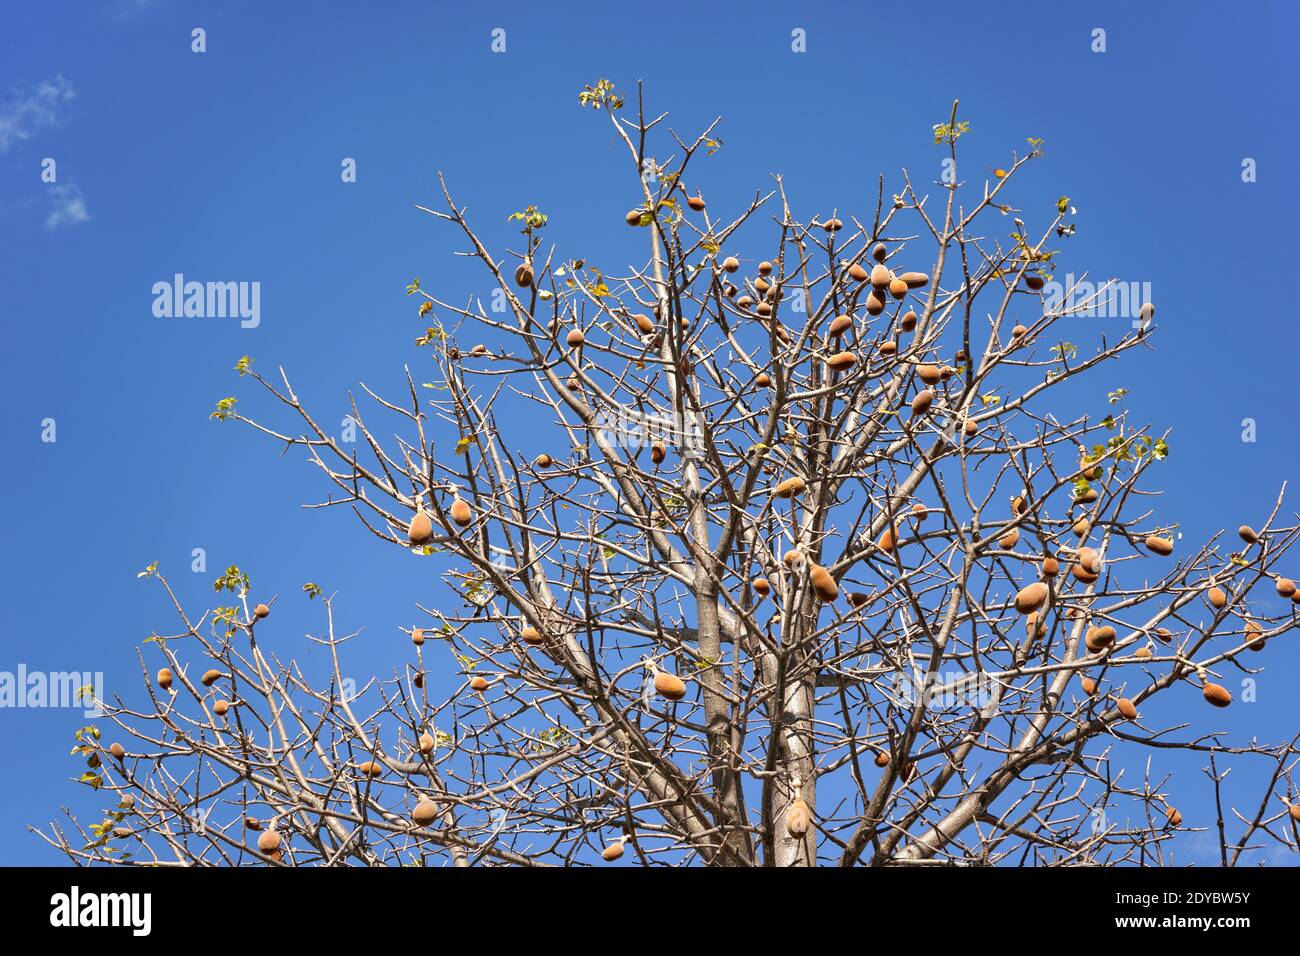 En regardant le baobab, seulement quelques feuilles, mais quelques fruits sur les branches, contre ciel bleu clair Banque D'Images